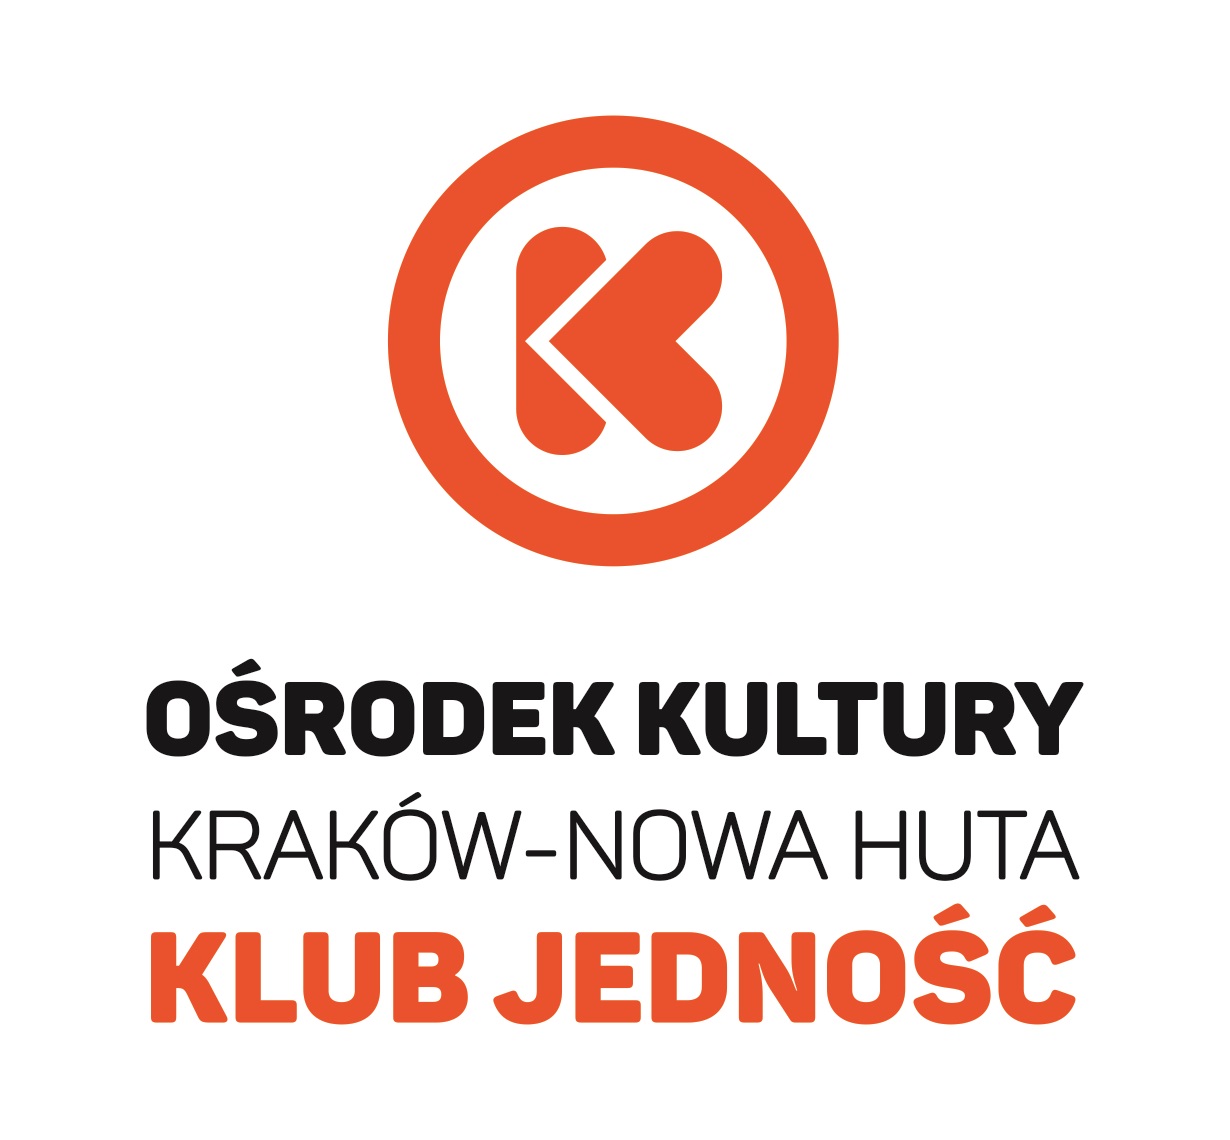 Klub Jedność Ośrodka Kultury Kraków-Nowa Huta